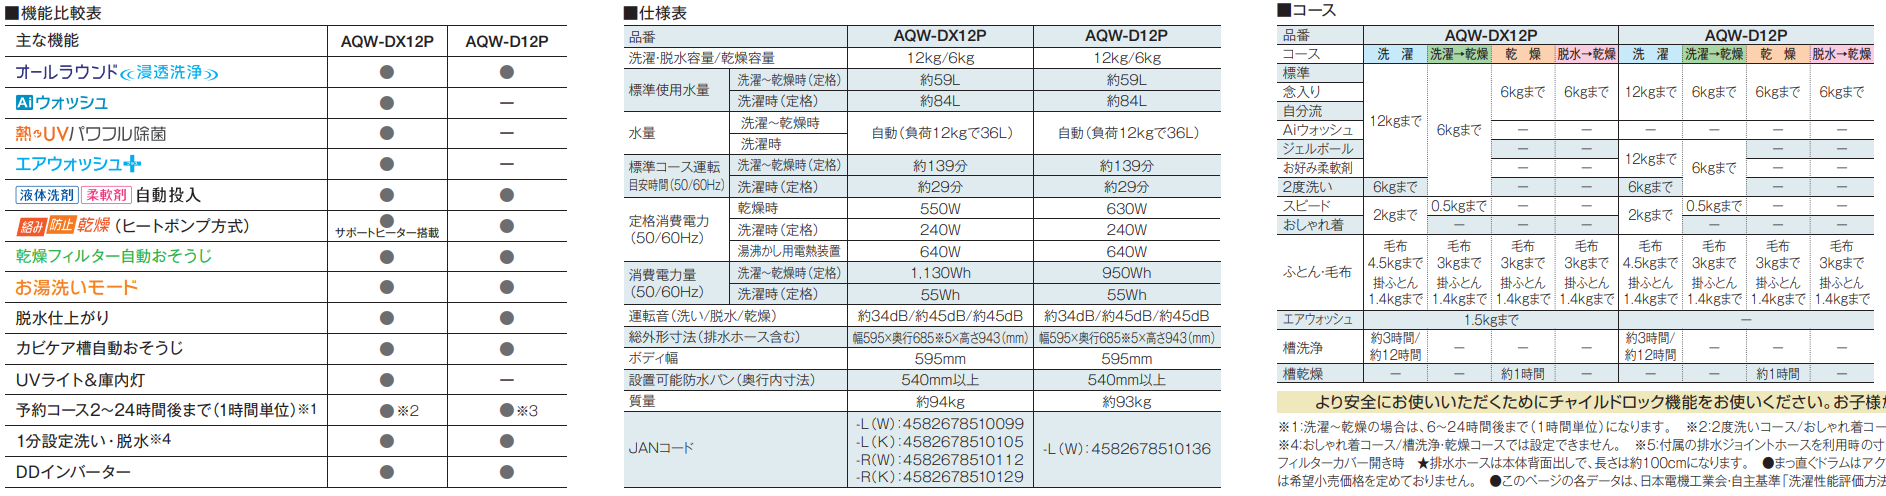 【鬼比較】AQW-DX12P-LとAQW-DX12N 新旧3台違い口コミ レビュー!